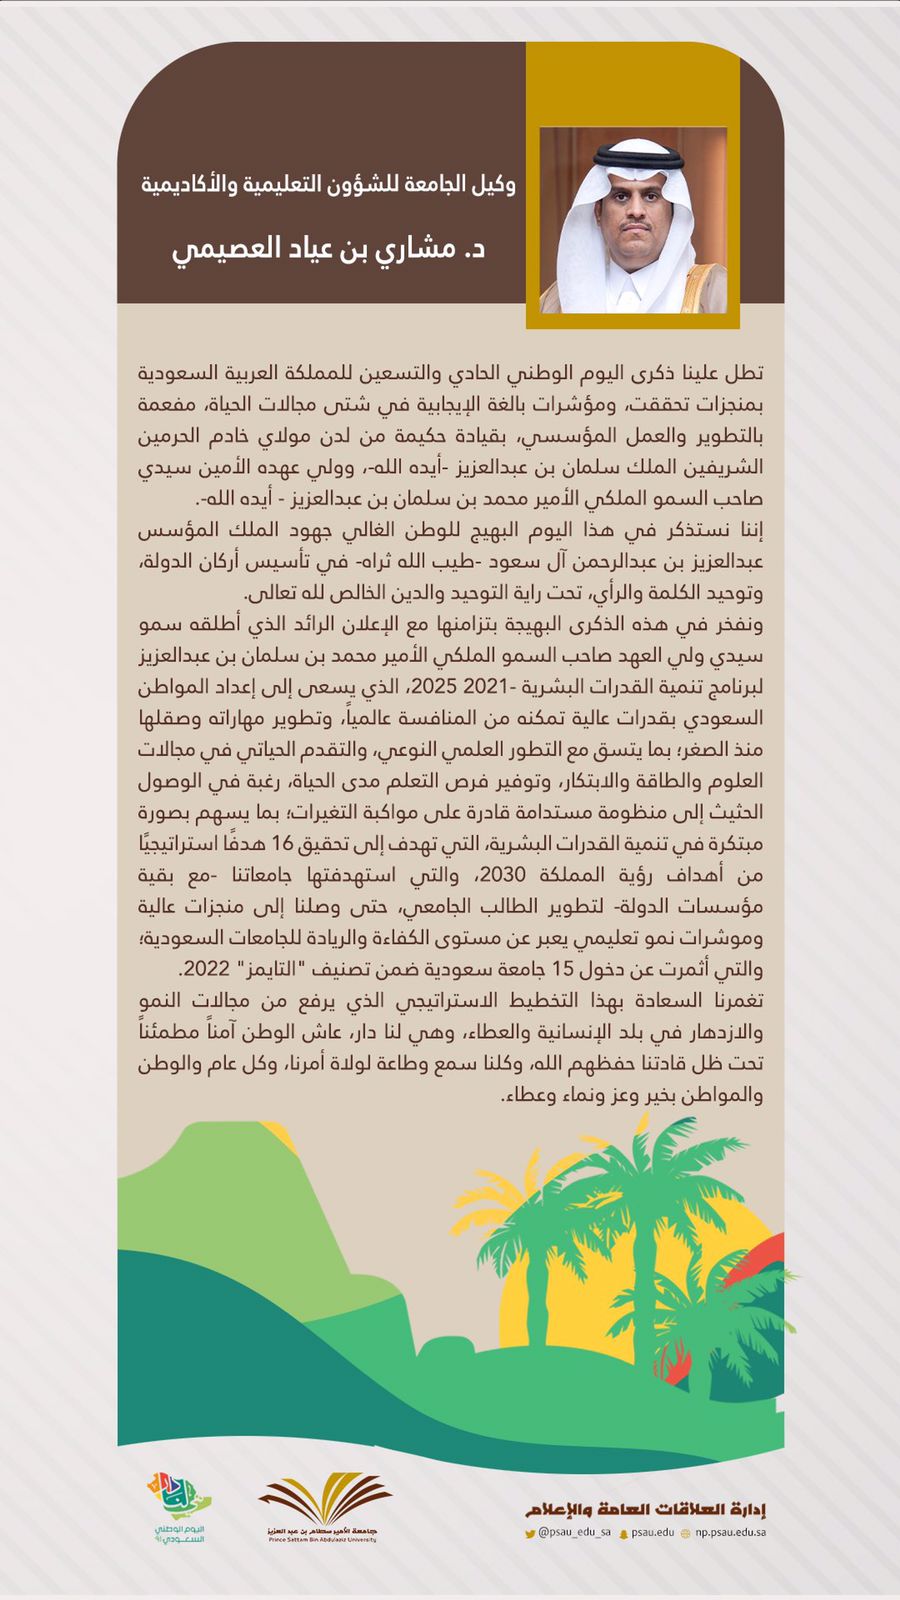 كلمة سعادة وكيل الجامعة للشؤون التعليمية والأكاديمية الدكتور مشاري بن عياد العصيمي بمناسبة اليوم الوطني السعودي ٩١